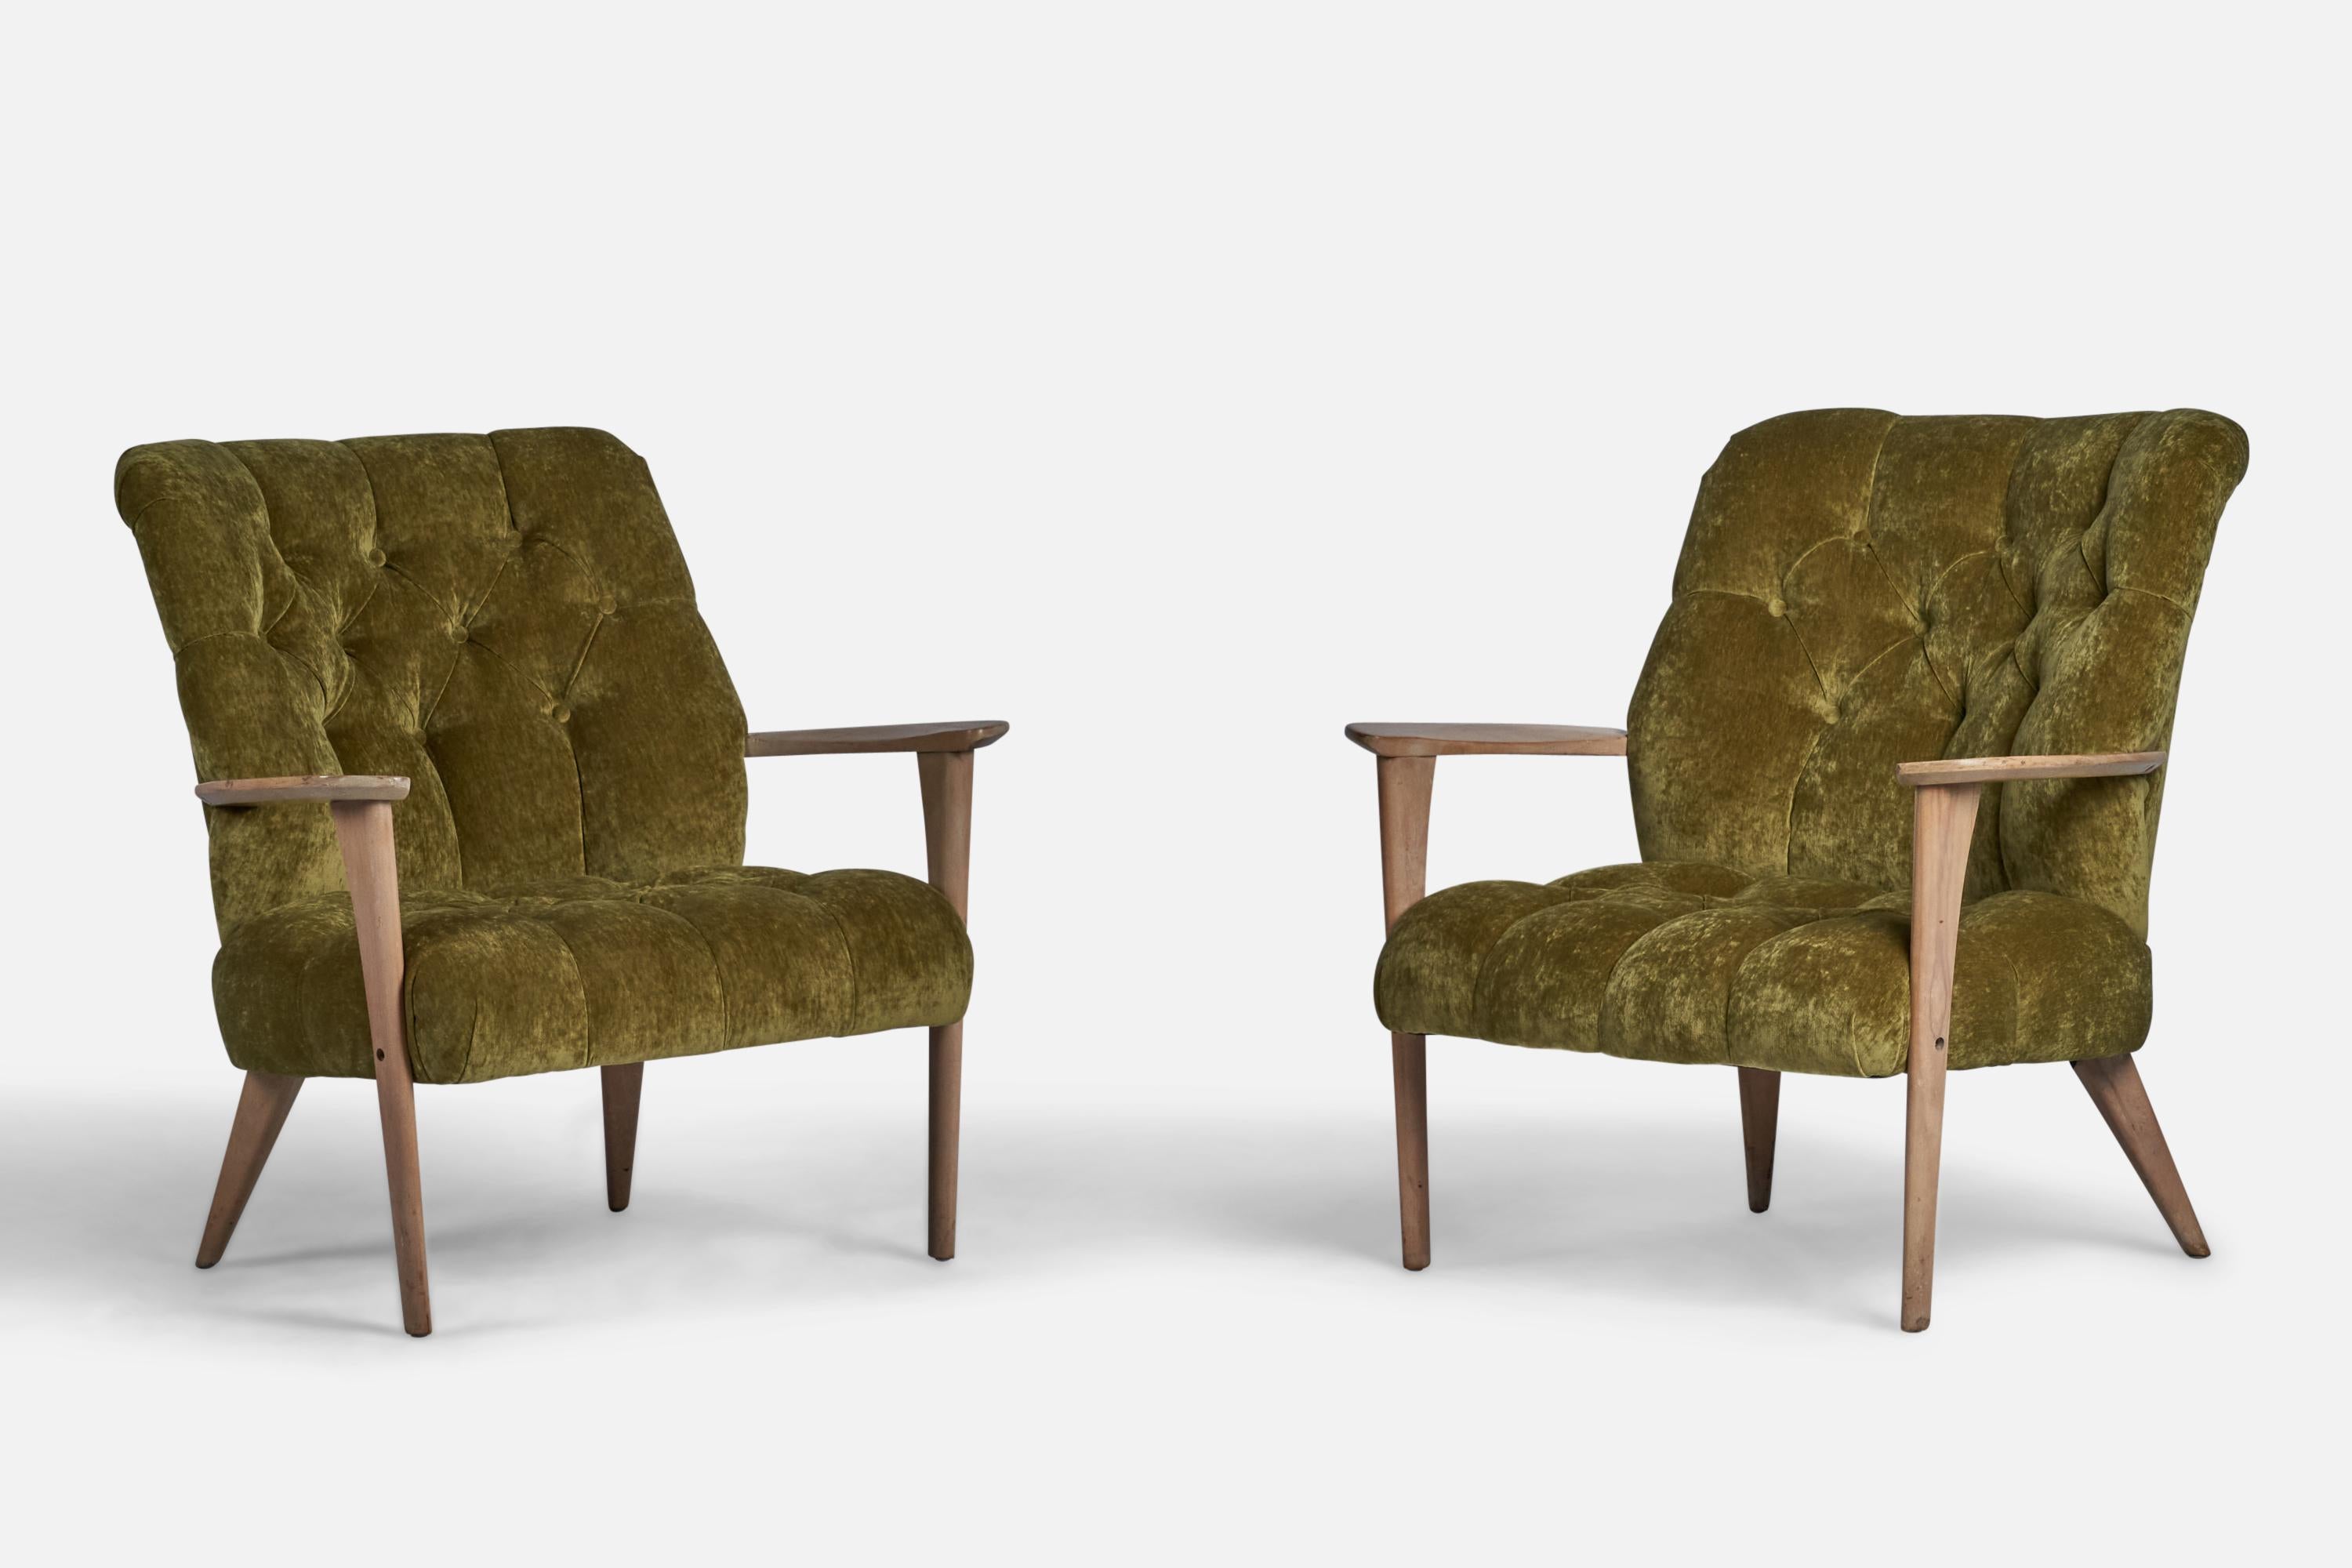 Paire de chaises de salon en chêne cérusé et tissu de velours vert, conçues et produites aux États-Unis, années 1940
Hauteur du siège : 14.85